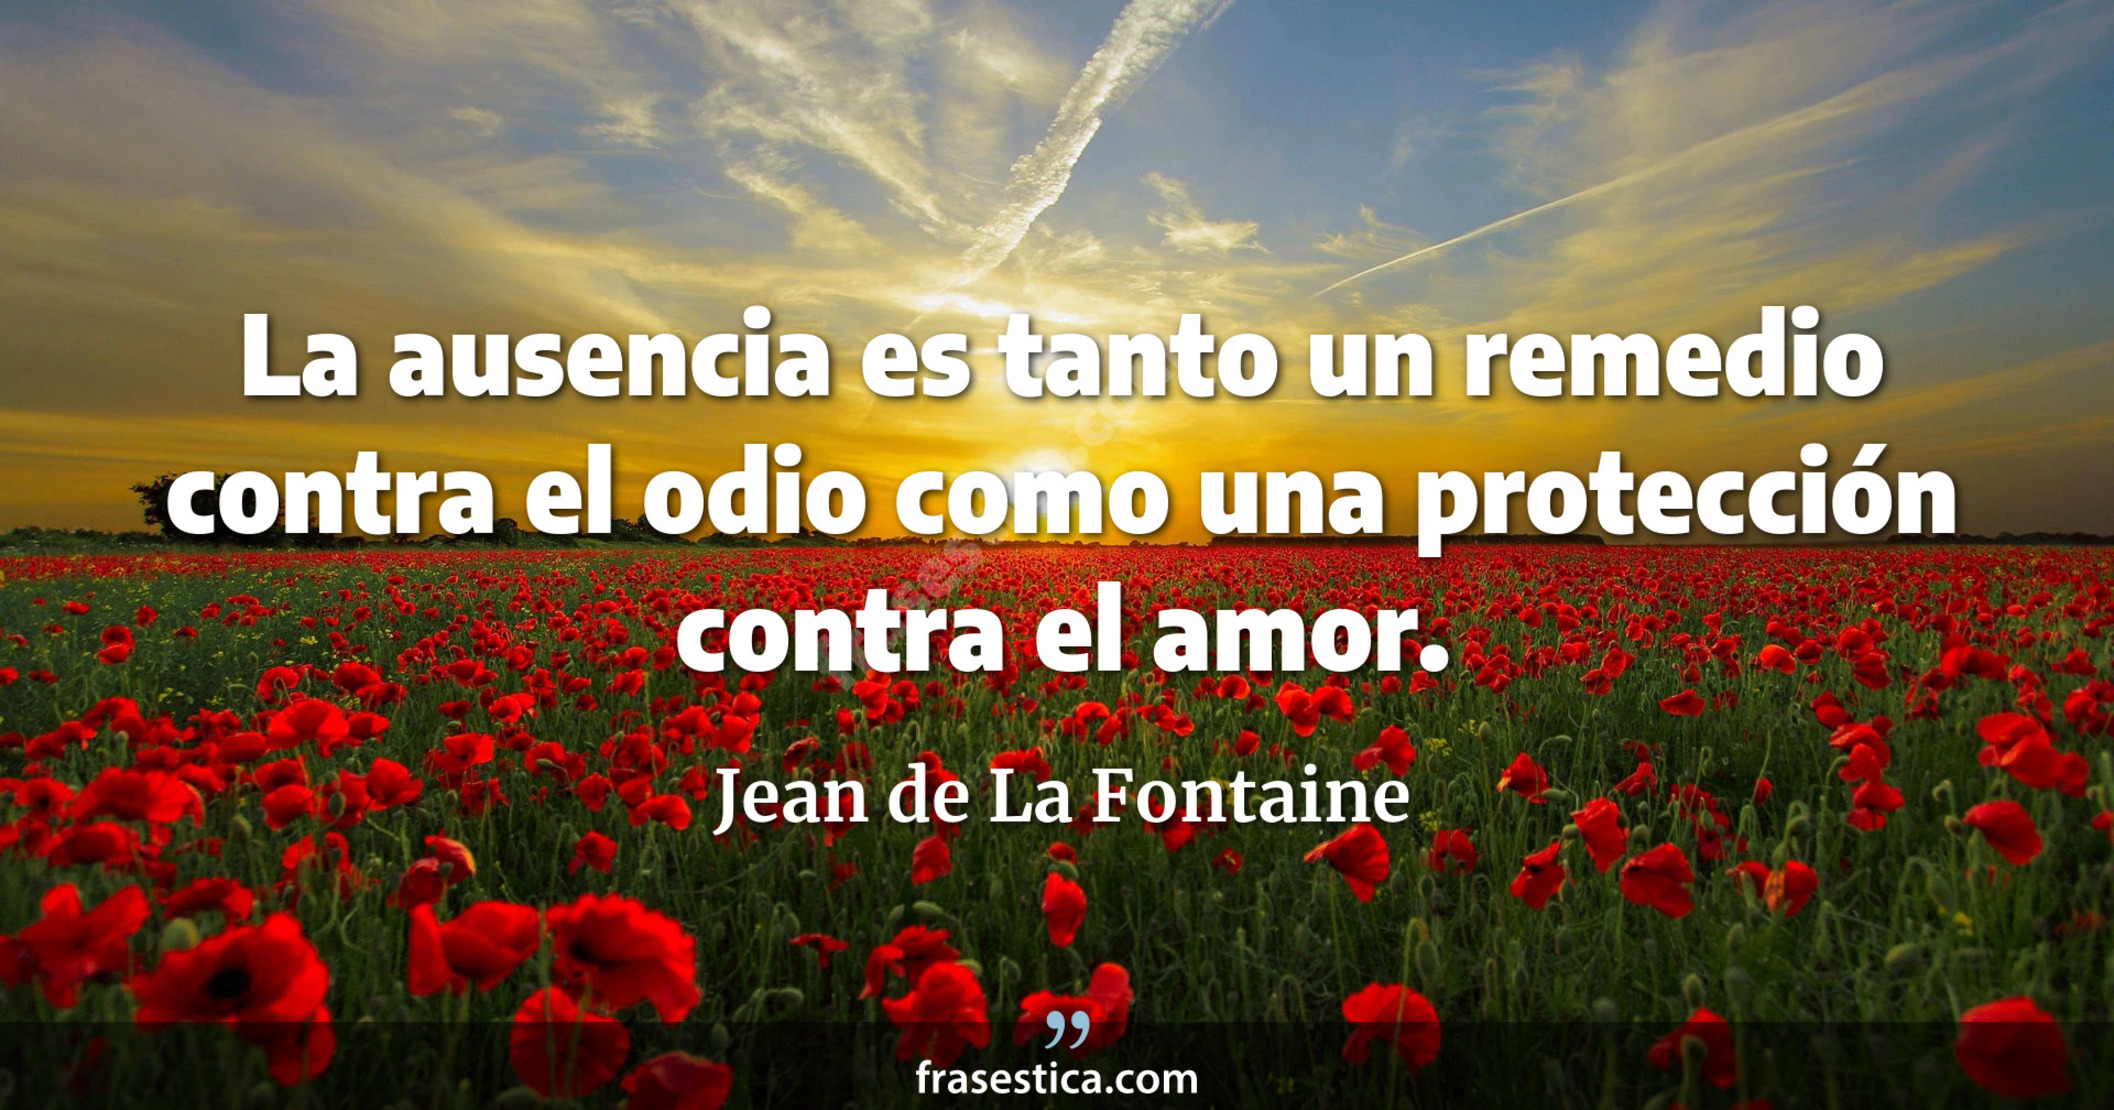 La ausencia es tanto un remedio contra el odio como una protección contra el amor. - Jean de La Fontaine